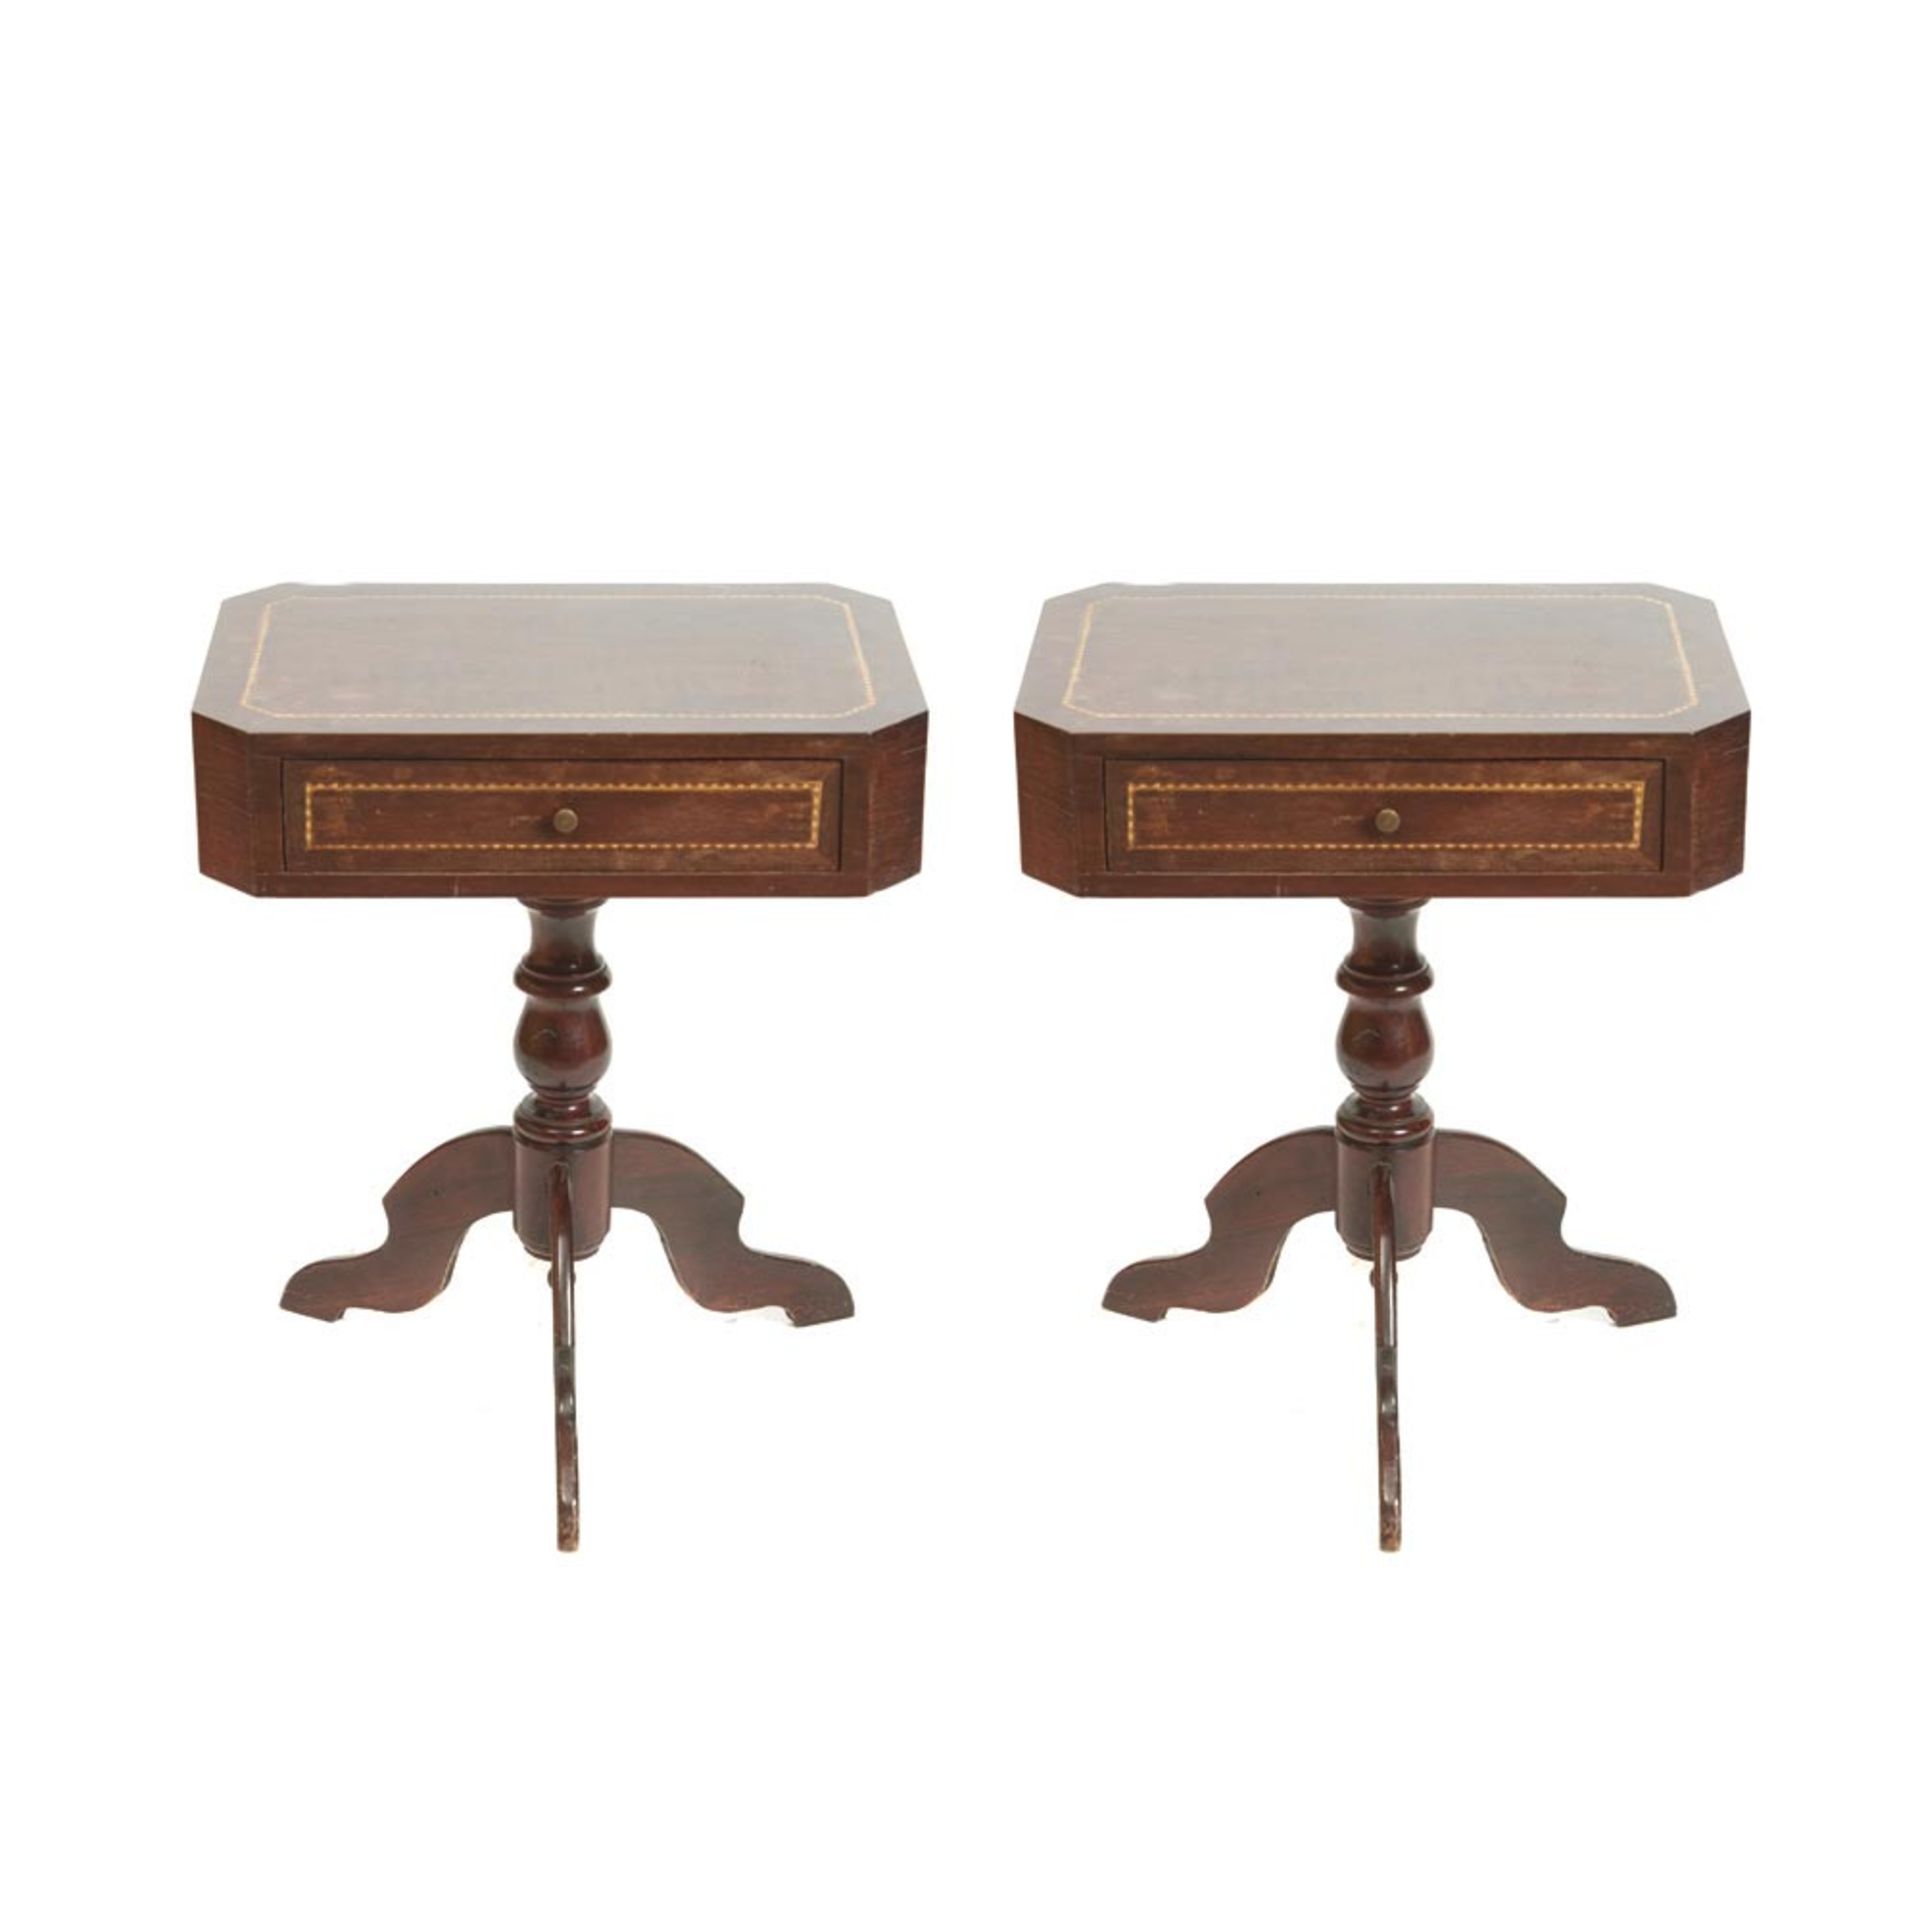 Isabelline mahogany wood pair tables 19th century. Pareja de mesitas isabelinas en madera de caoba - Bild 3 aus 3